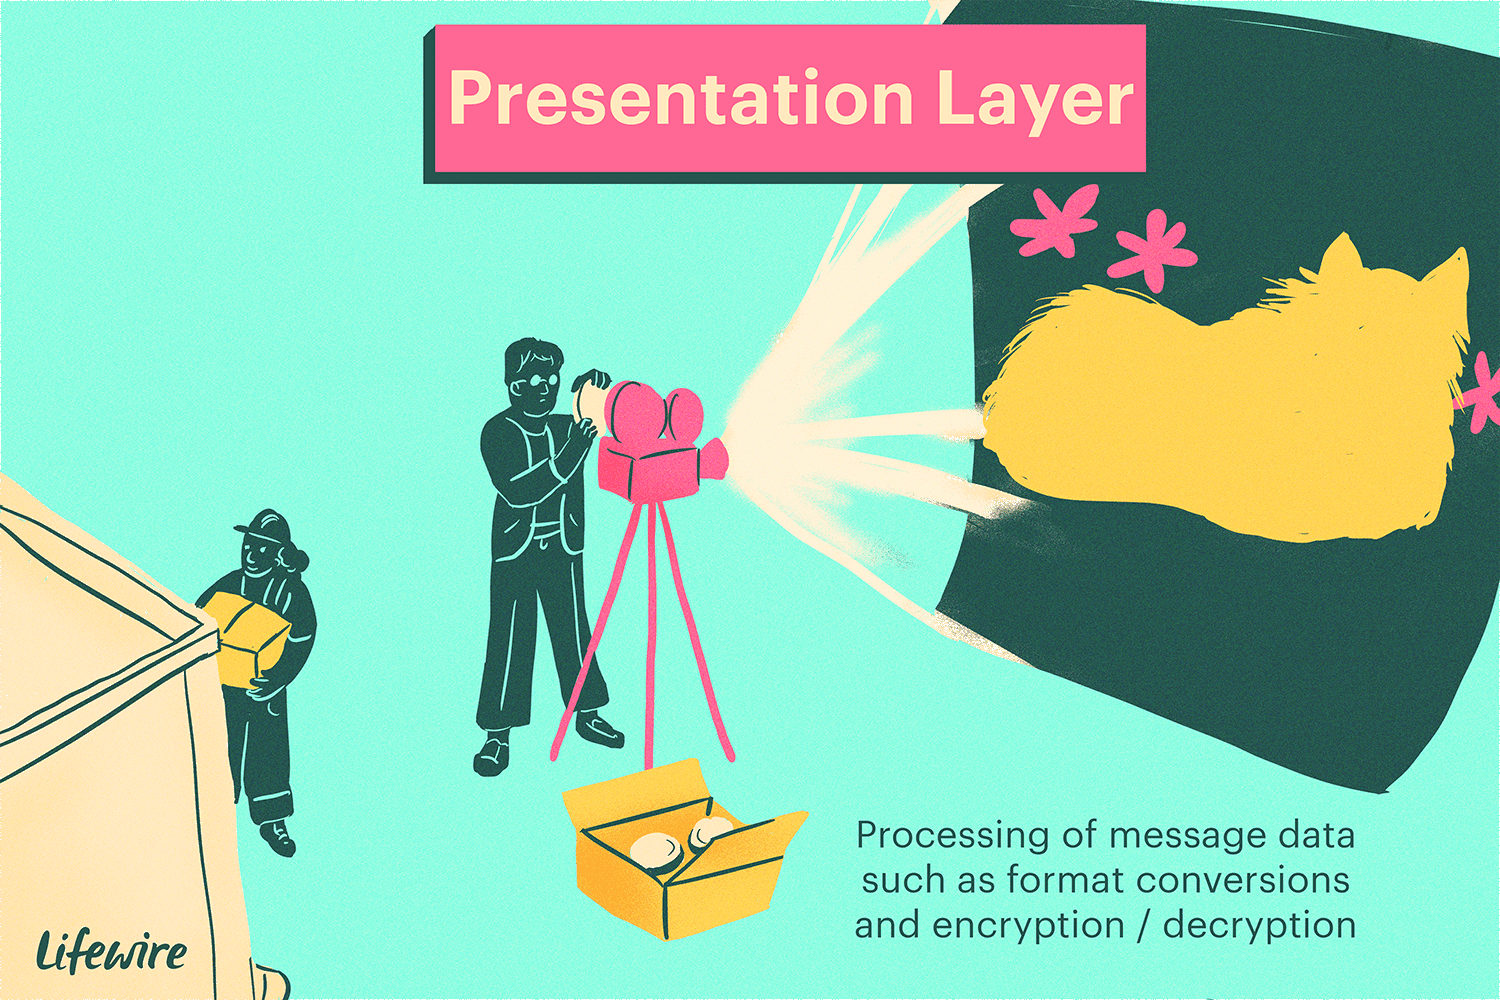 Иллюстрация презентационного слоя, который выглядит как кинопроектор